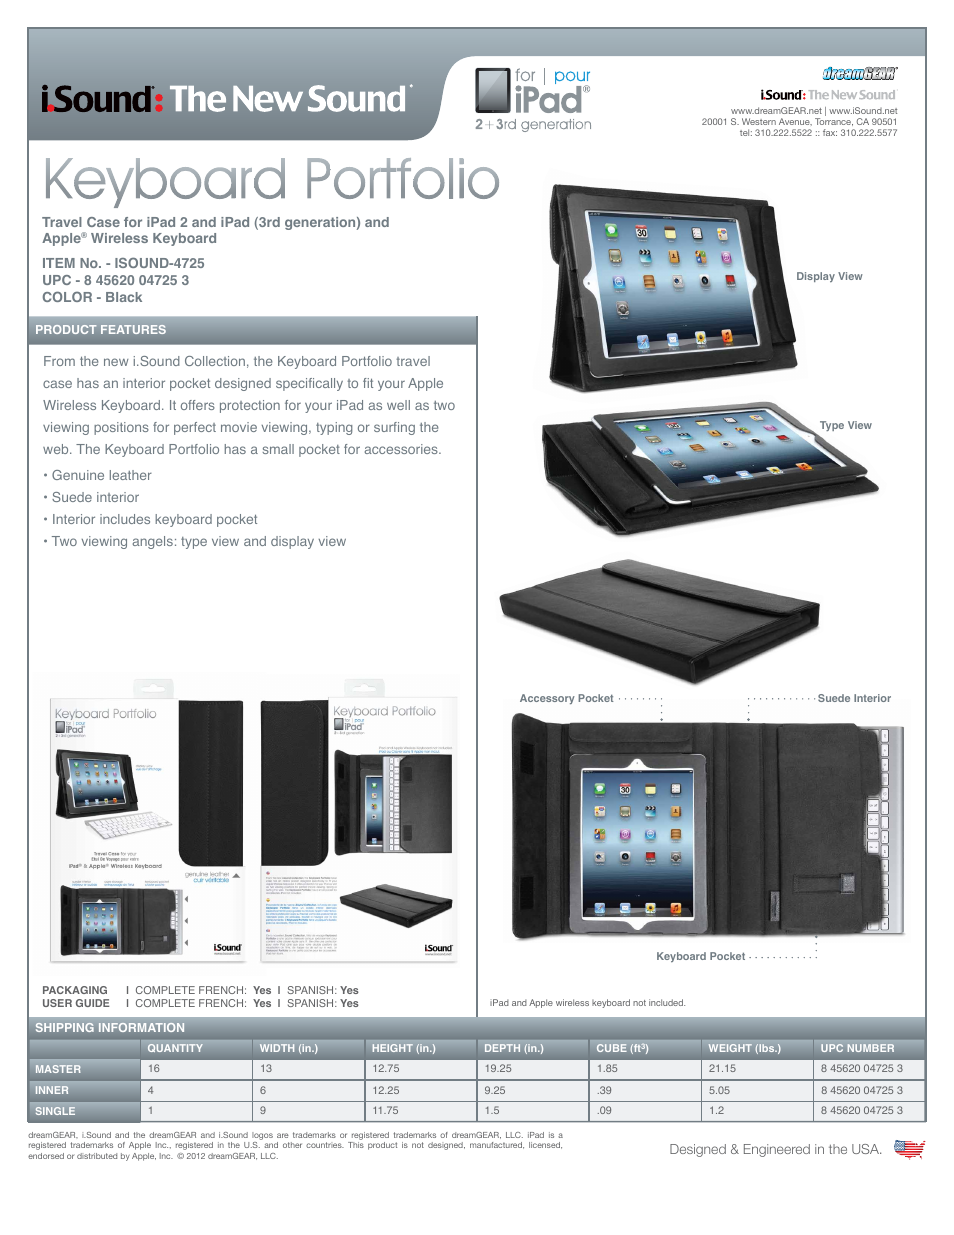 Keyboard Portfolio - Sell Sheet